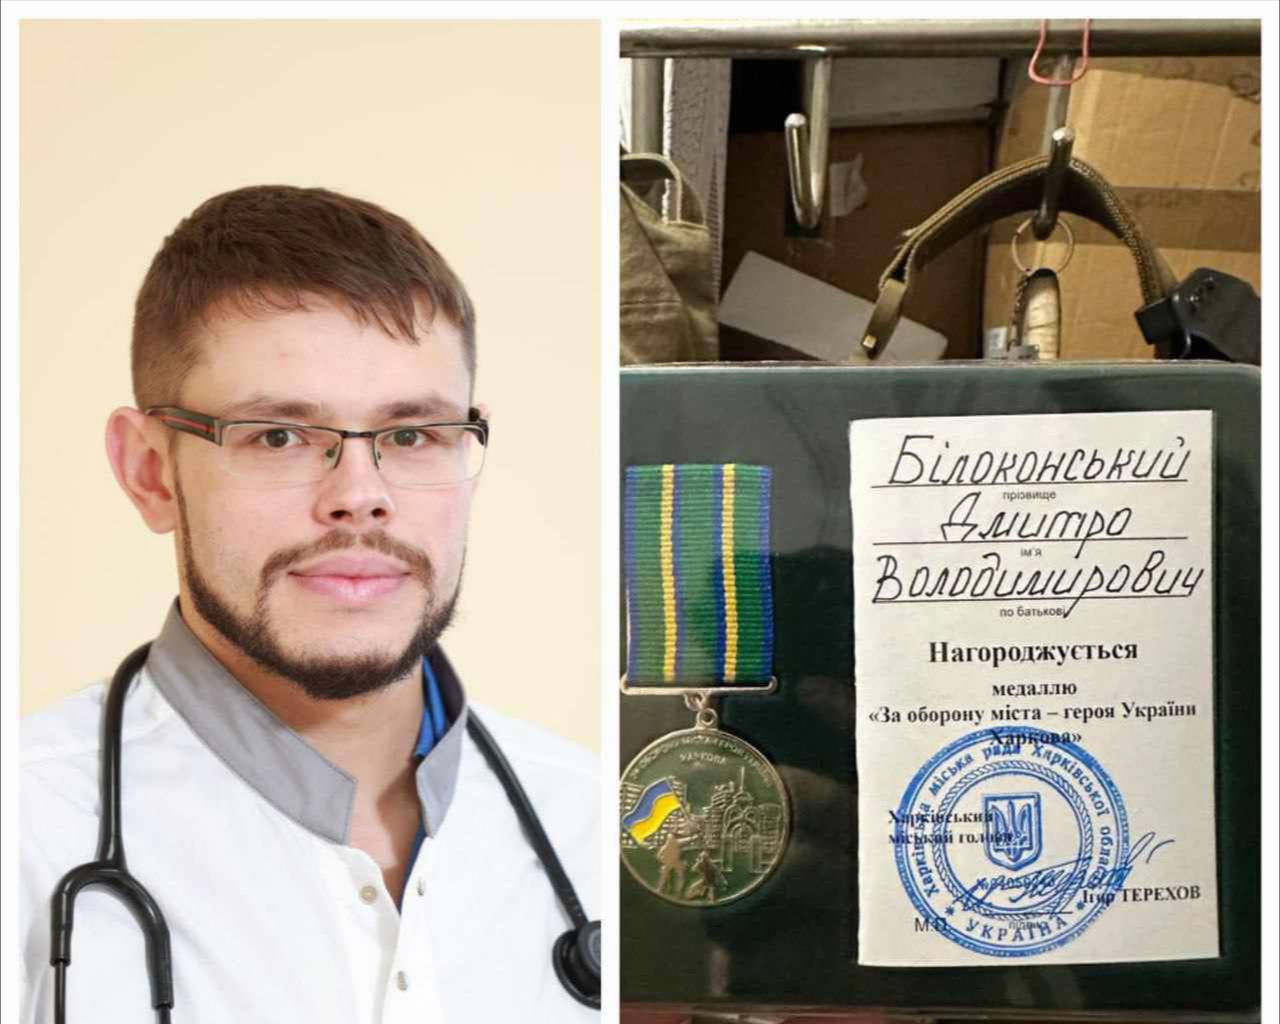 Медаллю «За оборону міста-героя України – Харкова» нагороджено лікаря з Ірпеня